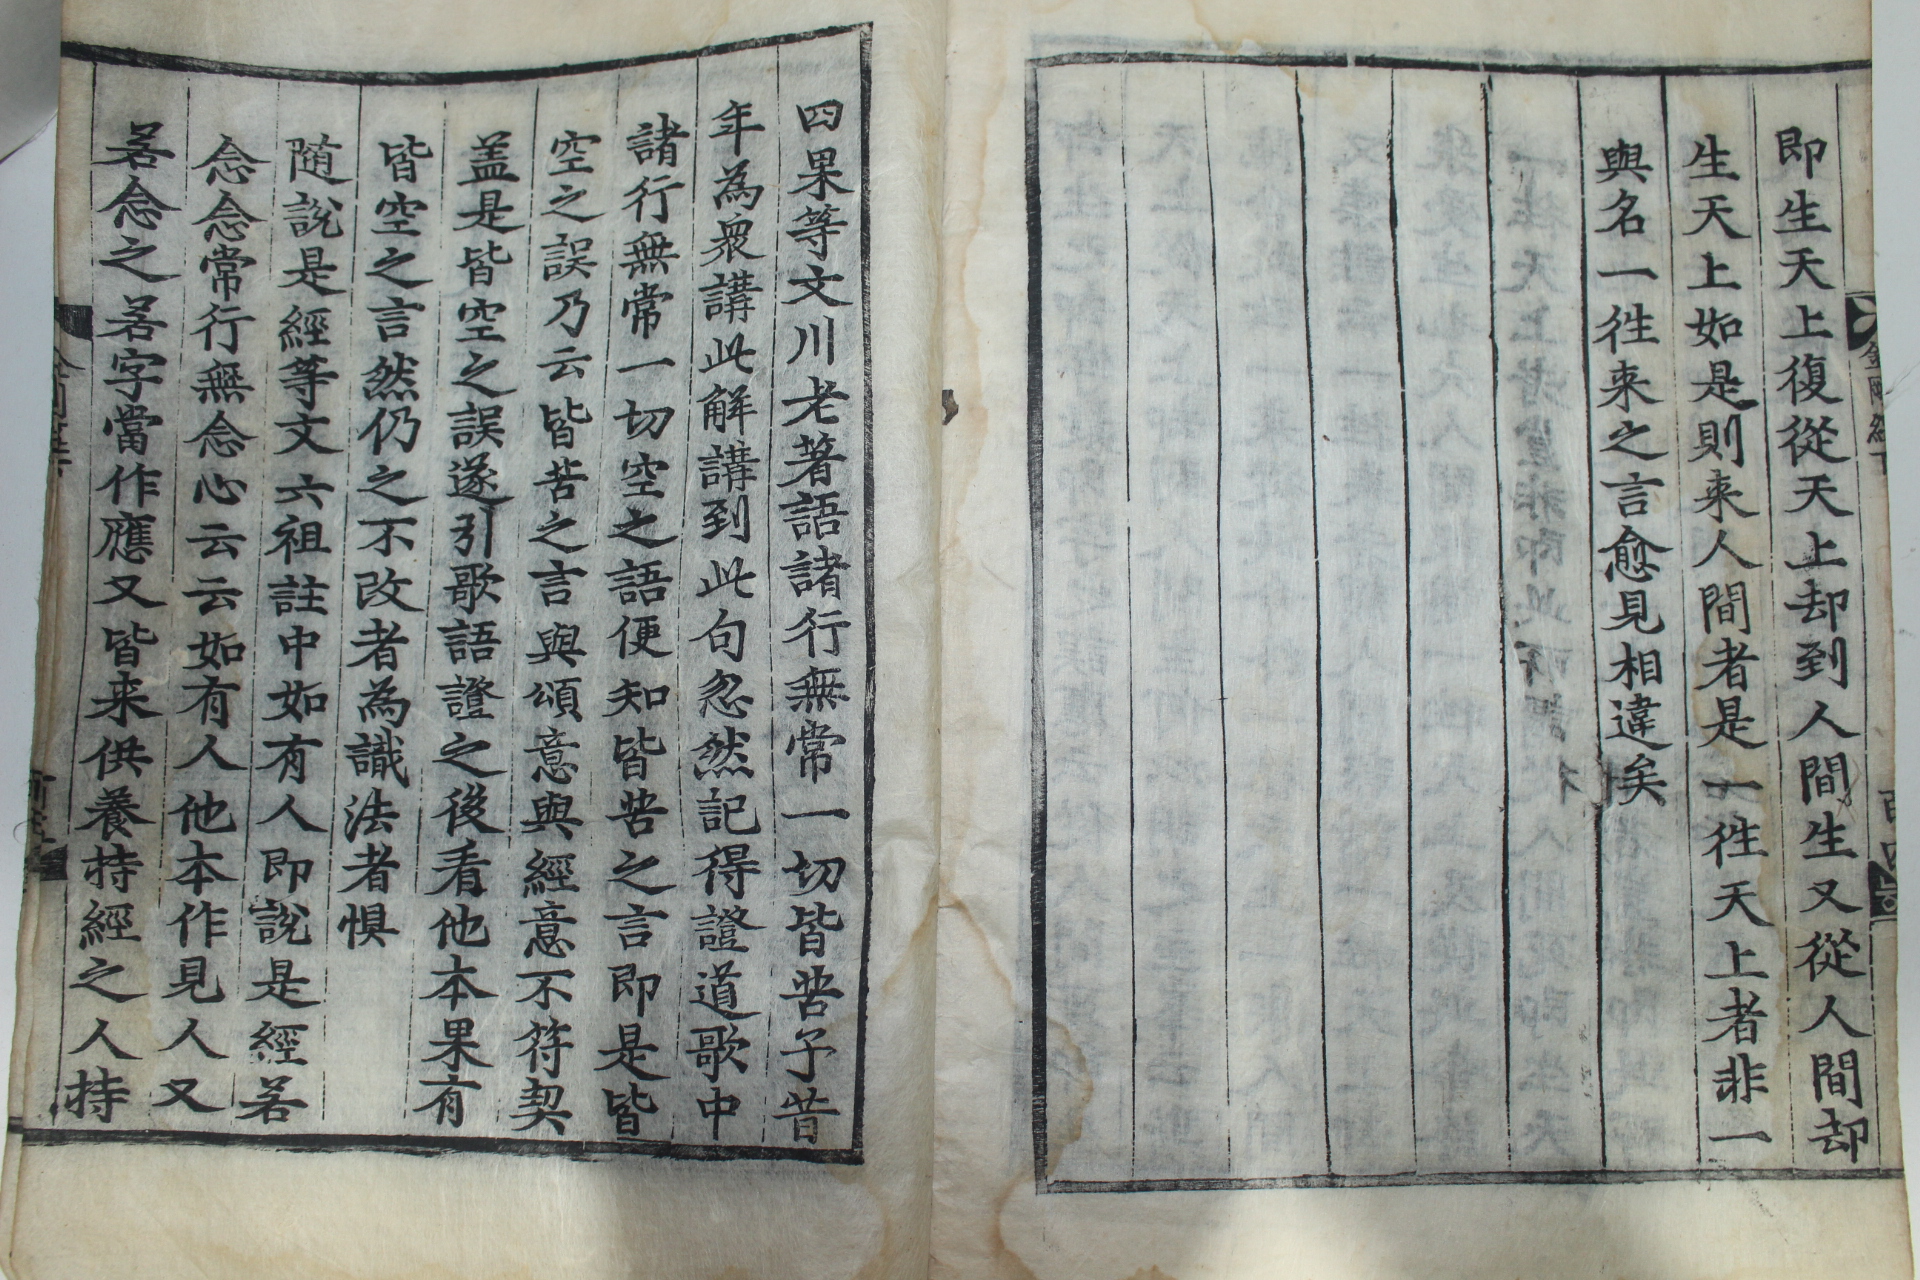 1600년대 목판본 금강반야바라밀경(金剛般若波羅蜜經) 하권 1책